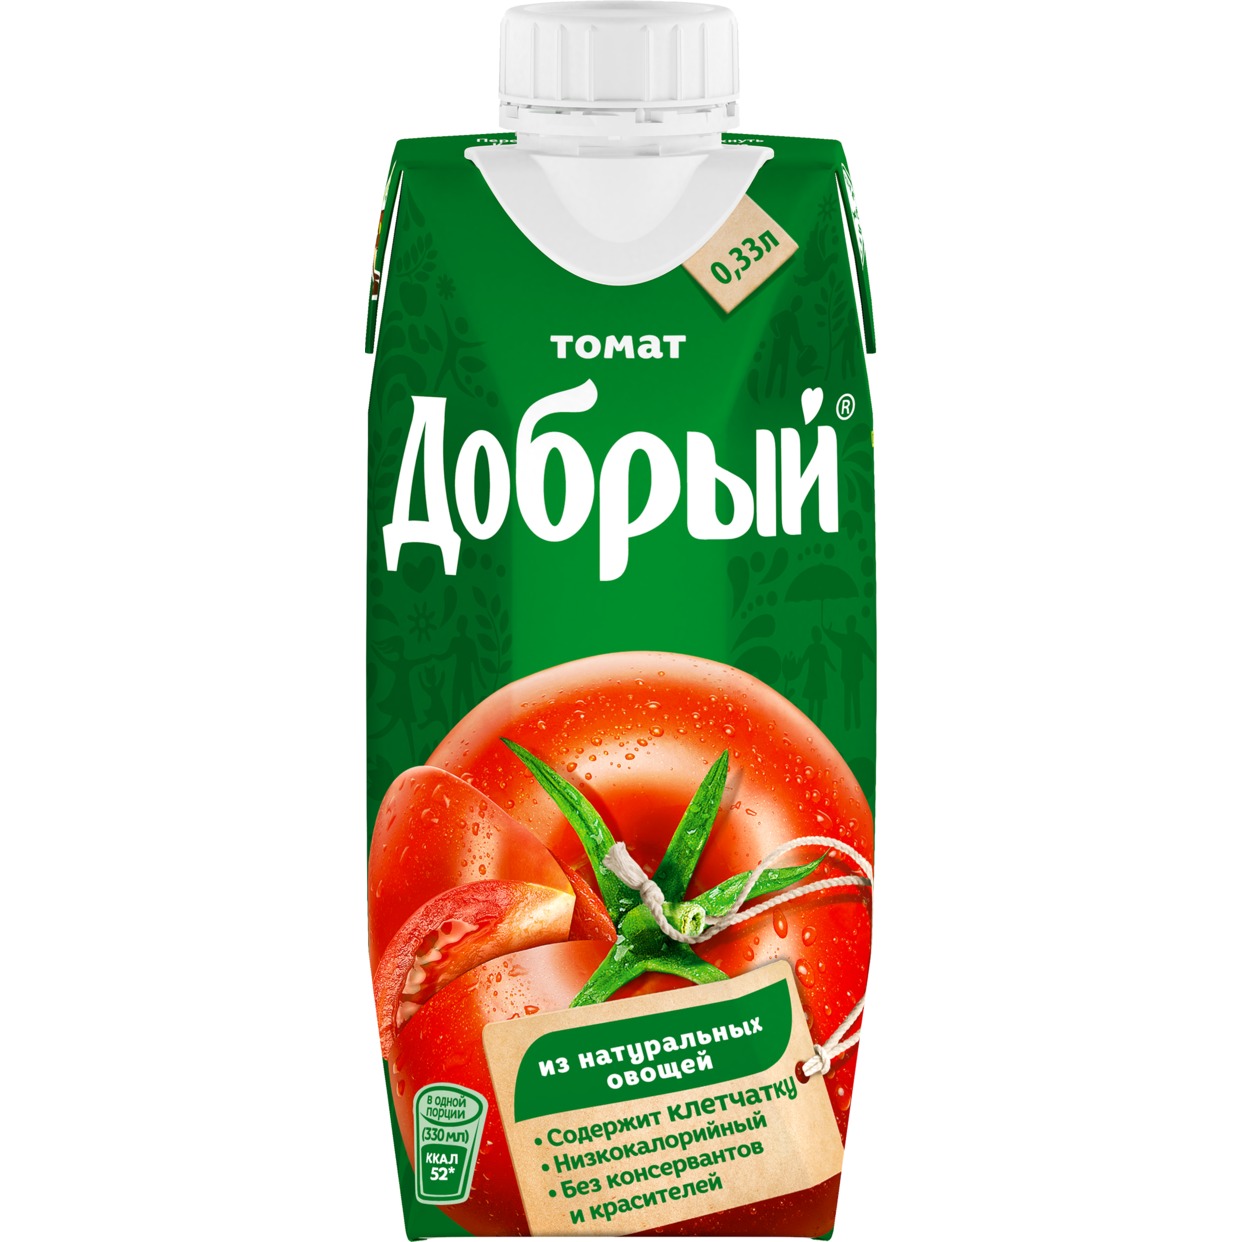 Сок Добрый томатный с солью 330мл по акции в Пятерочке